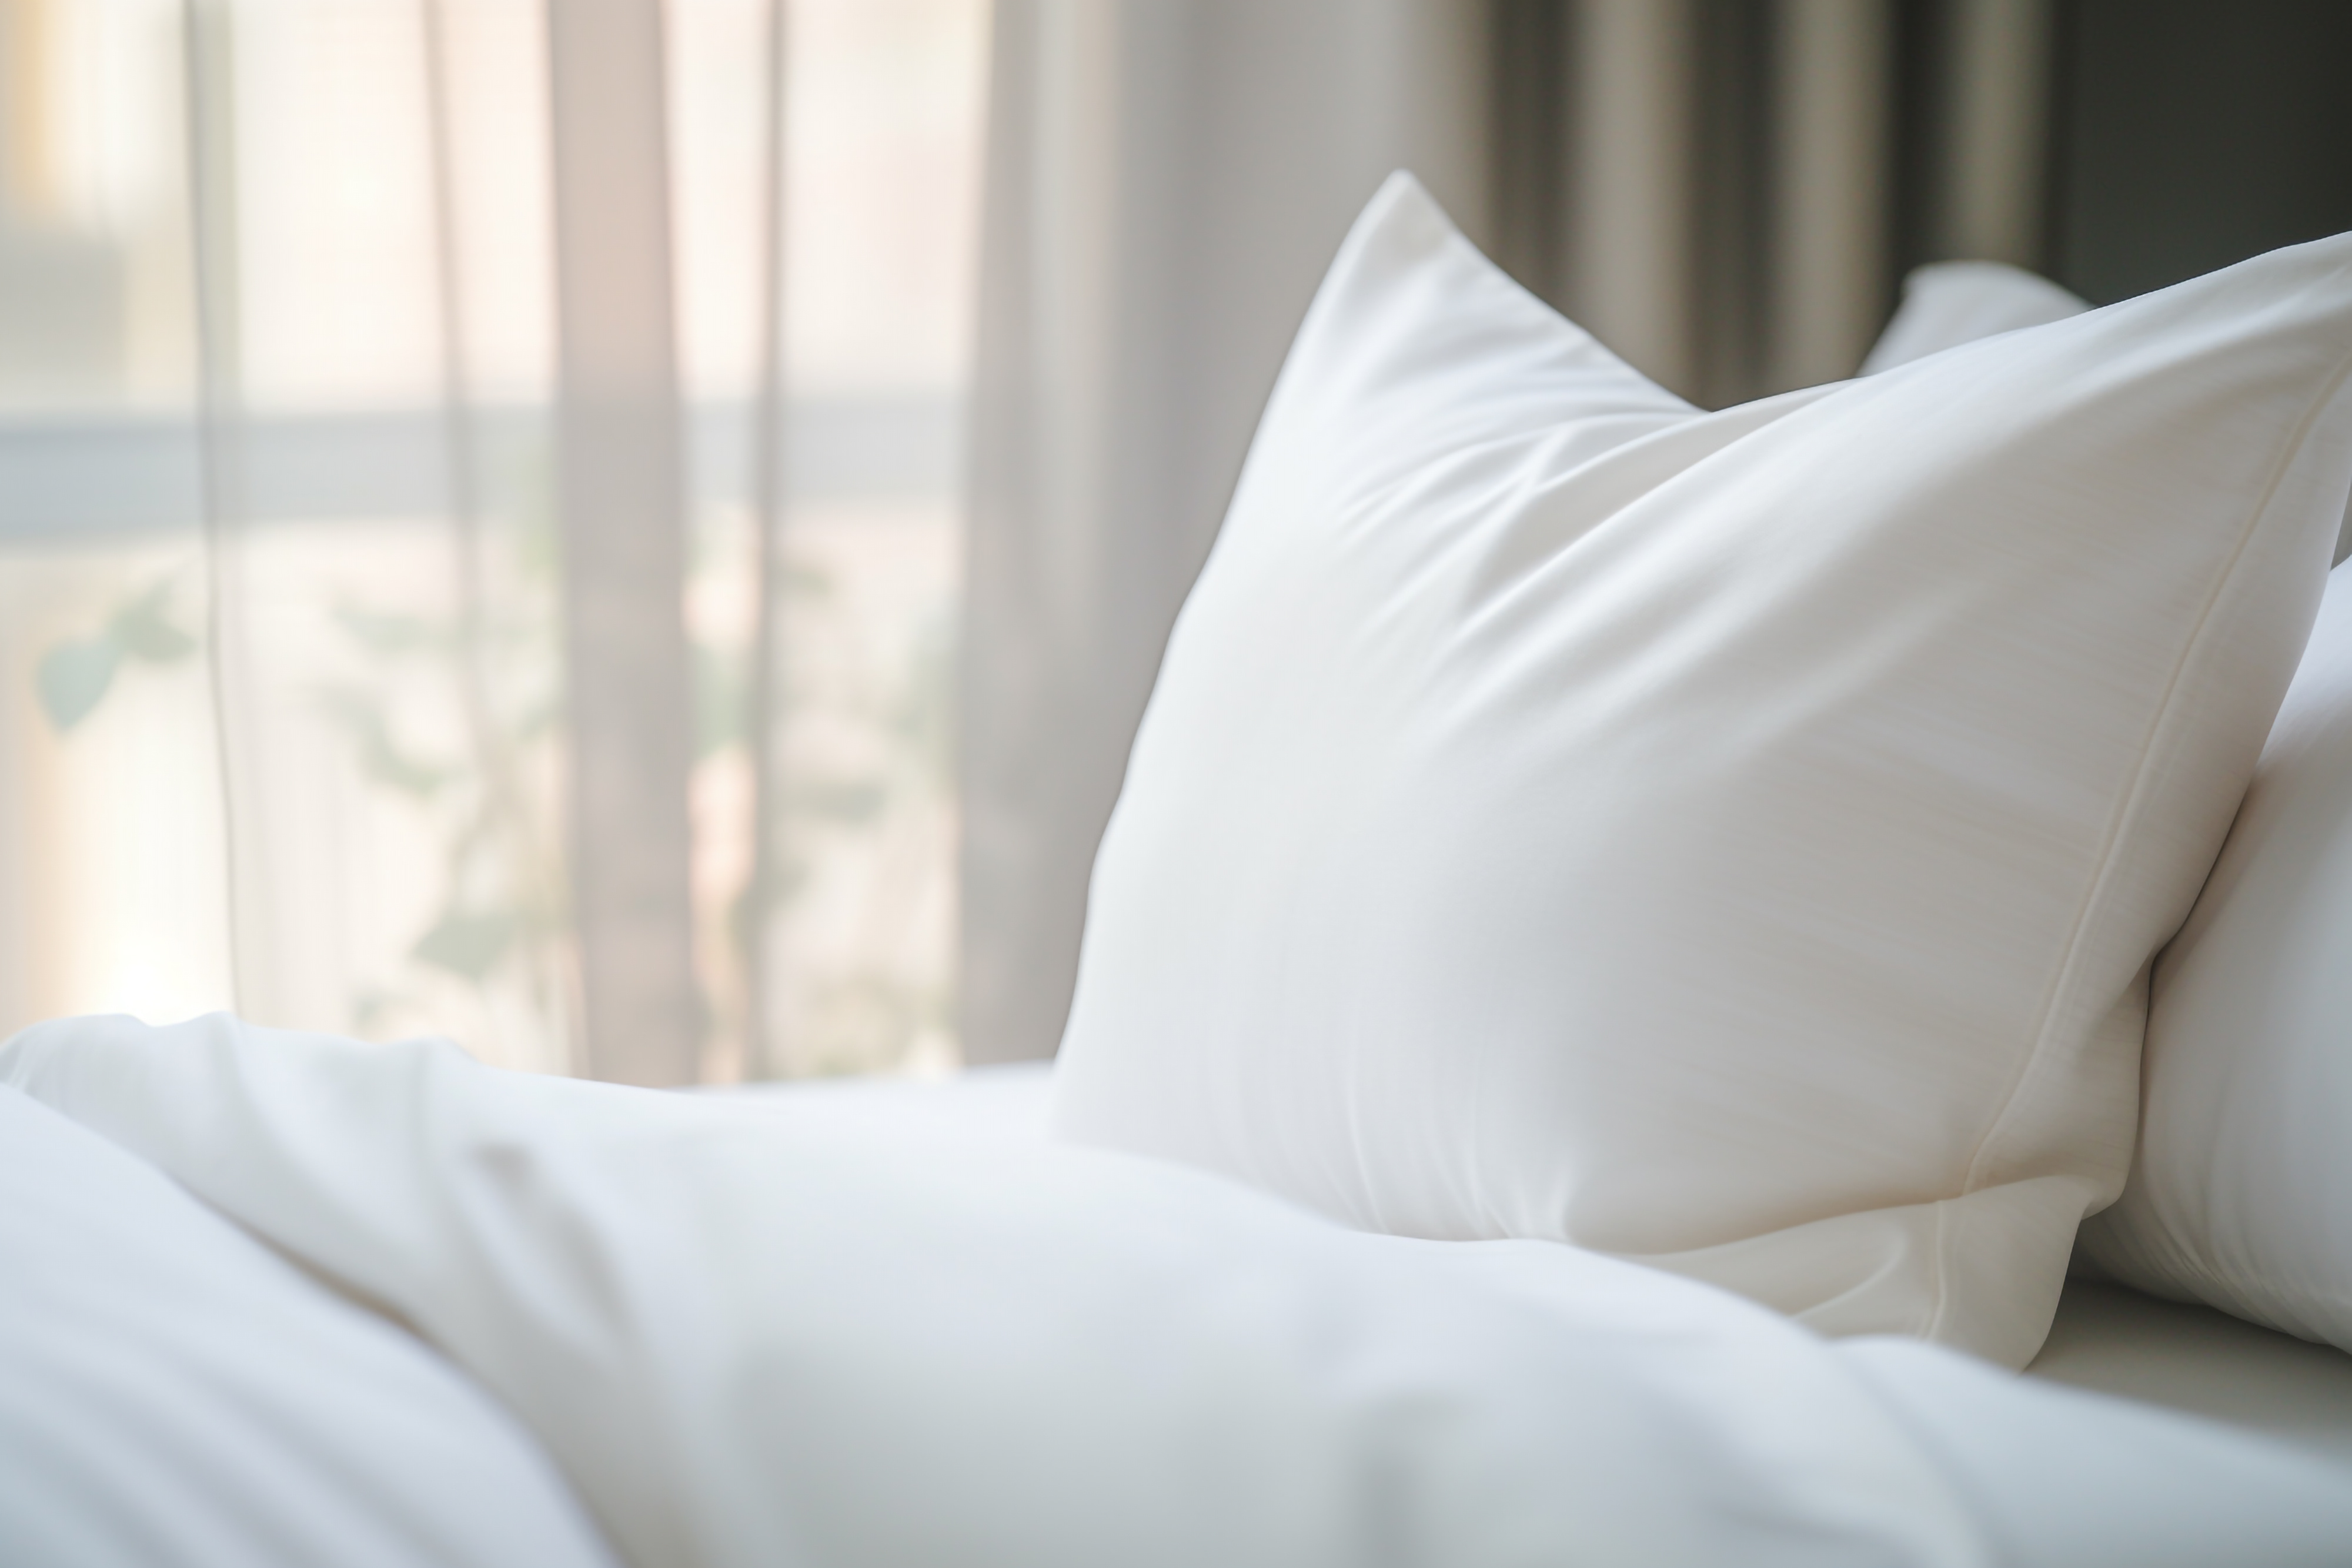 La taie d'oreiller est un élément indispensable pour des nuits de sommeil optimales © Golden House Images, Adobe Stock